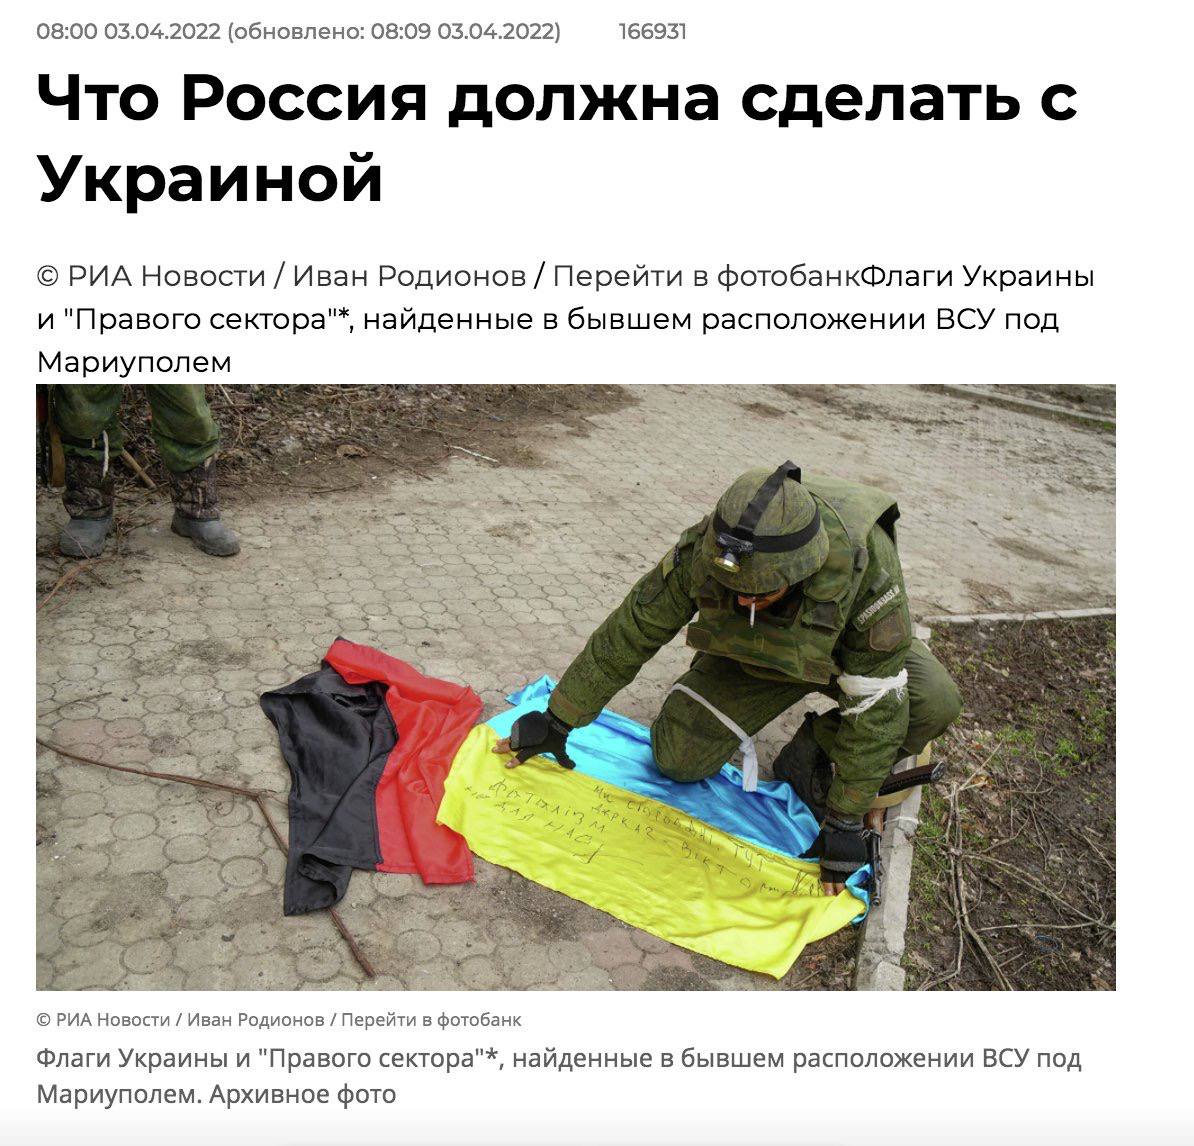 Російські пропагандисти розповіли, що робитимуть з Україною: "перевиховання", цензура, репресії